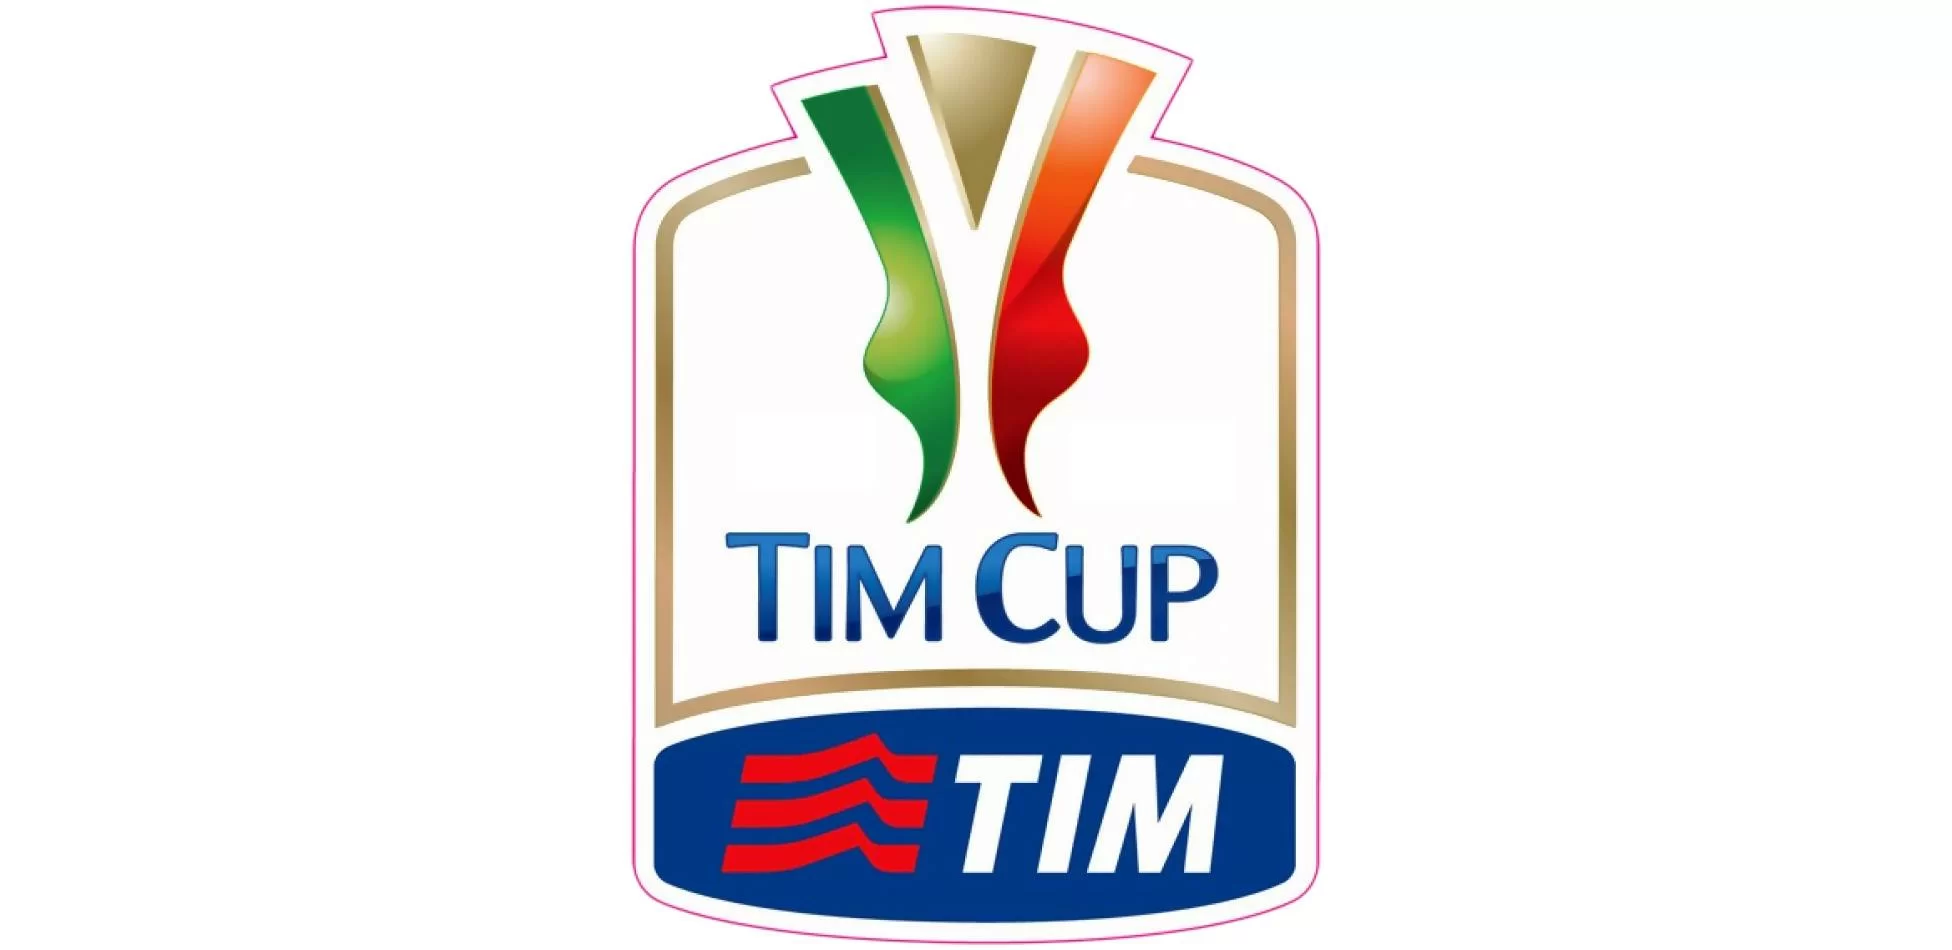 Coppa Italia: le date della (eventuale) semifinale rossonera